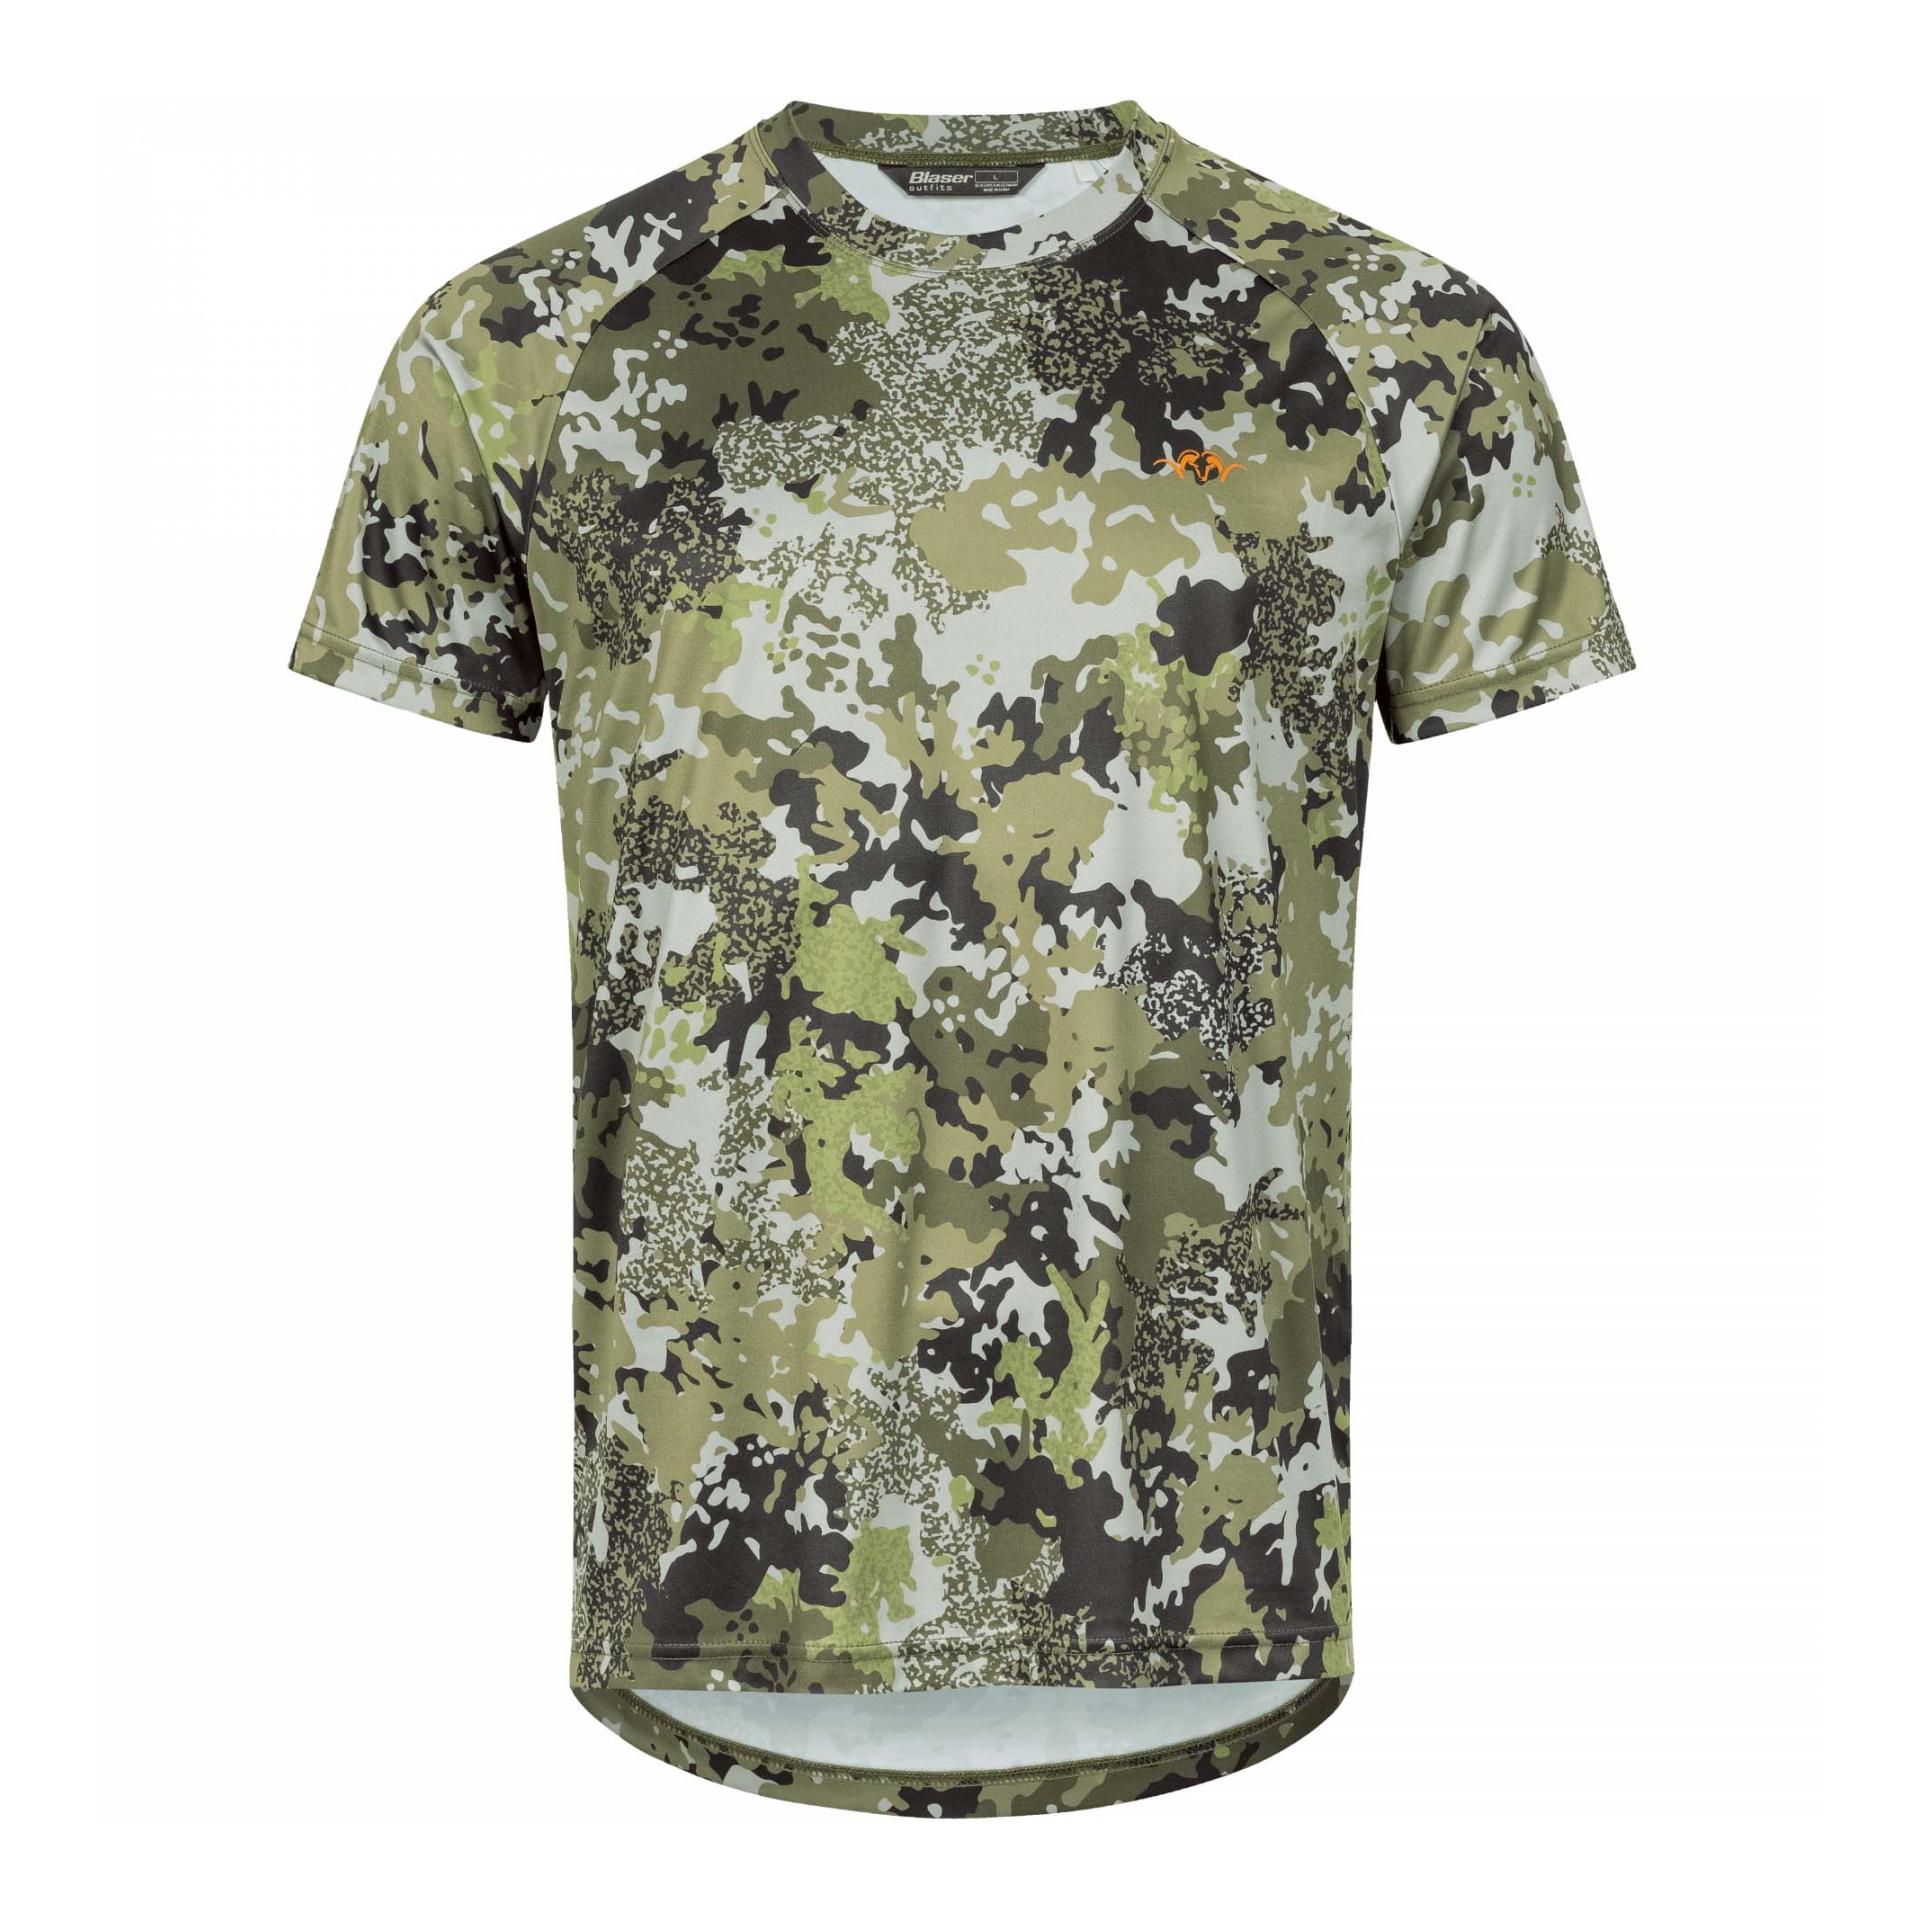 Image of Blaser 20 Funktions T-Shirt - HunTec Camouflage bei Hauptner Jagd